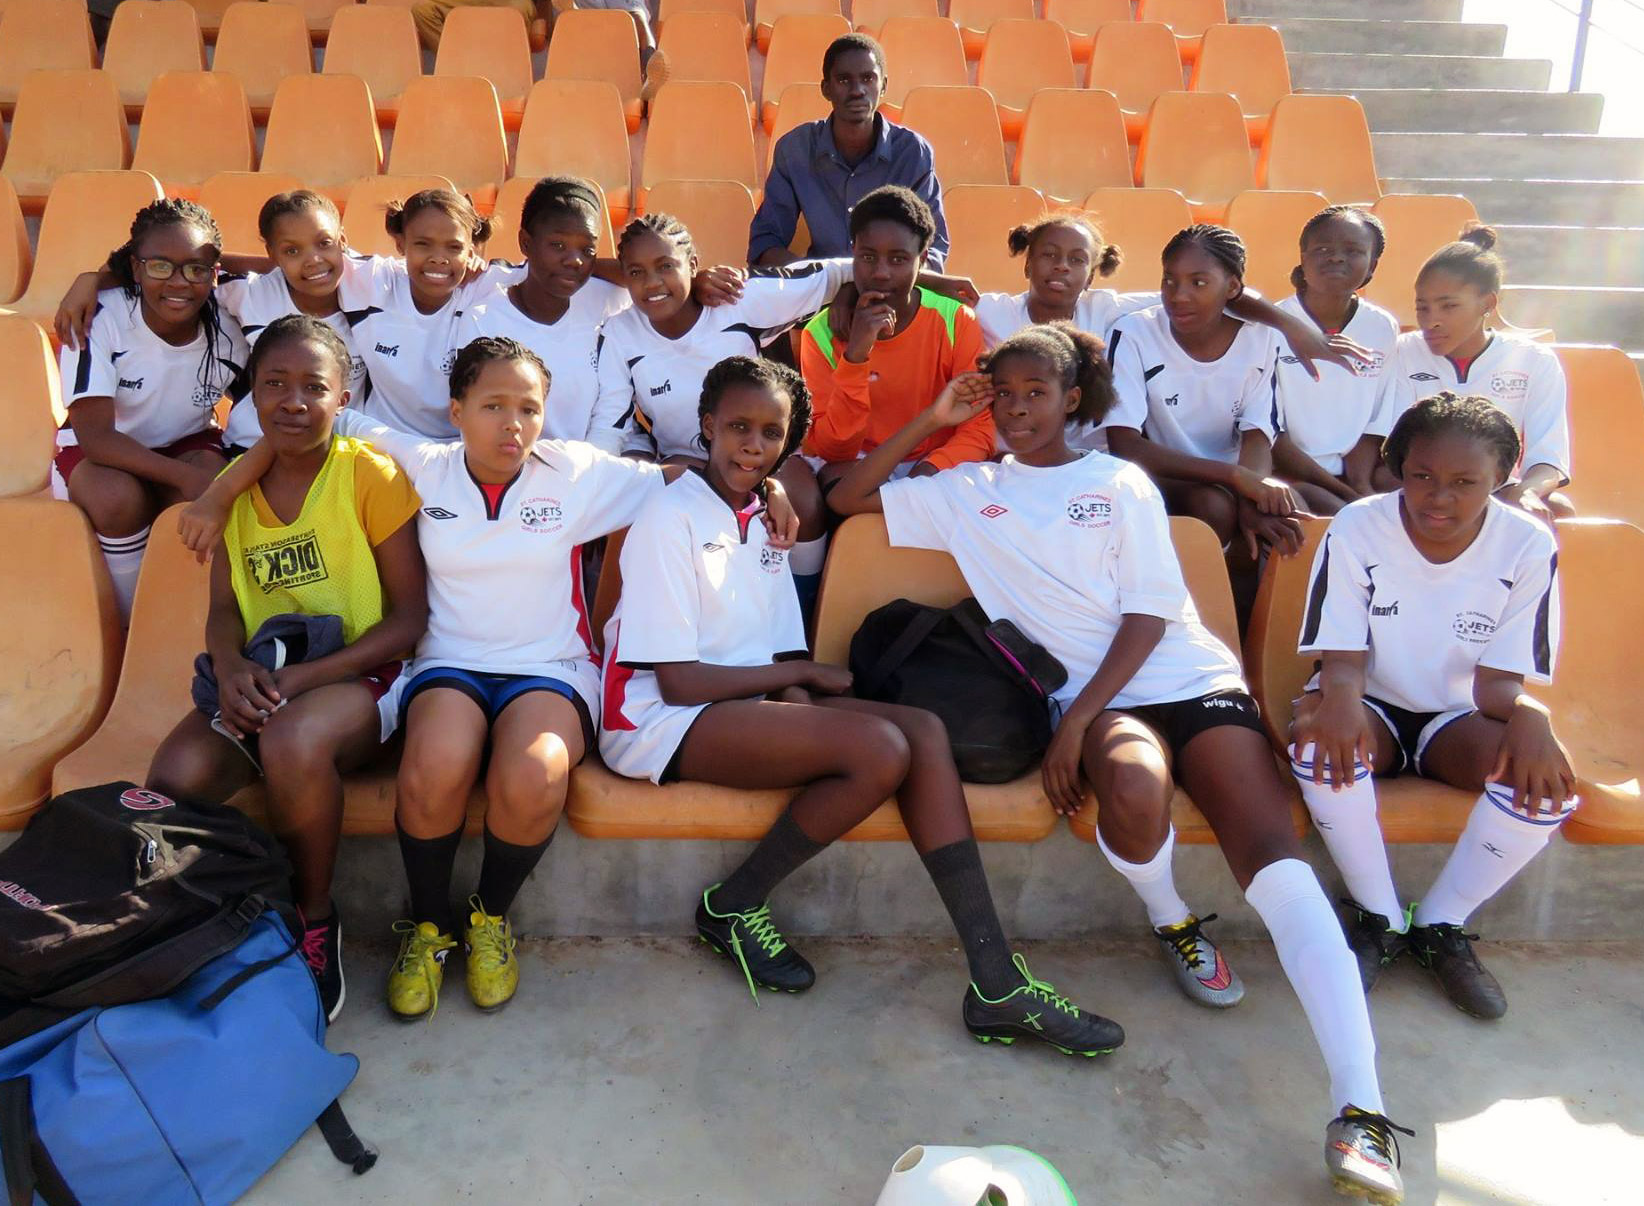 PAY-soccer-team-girls